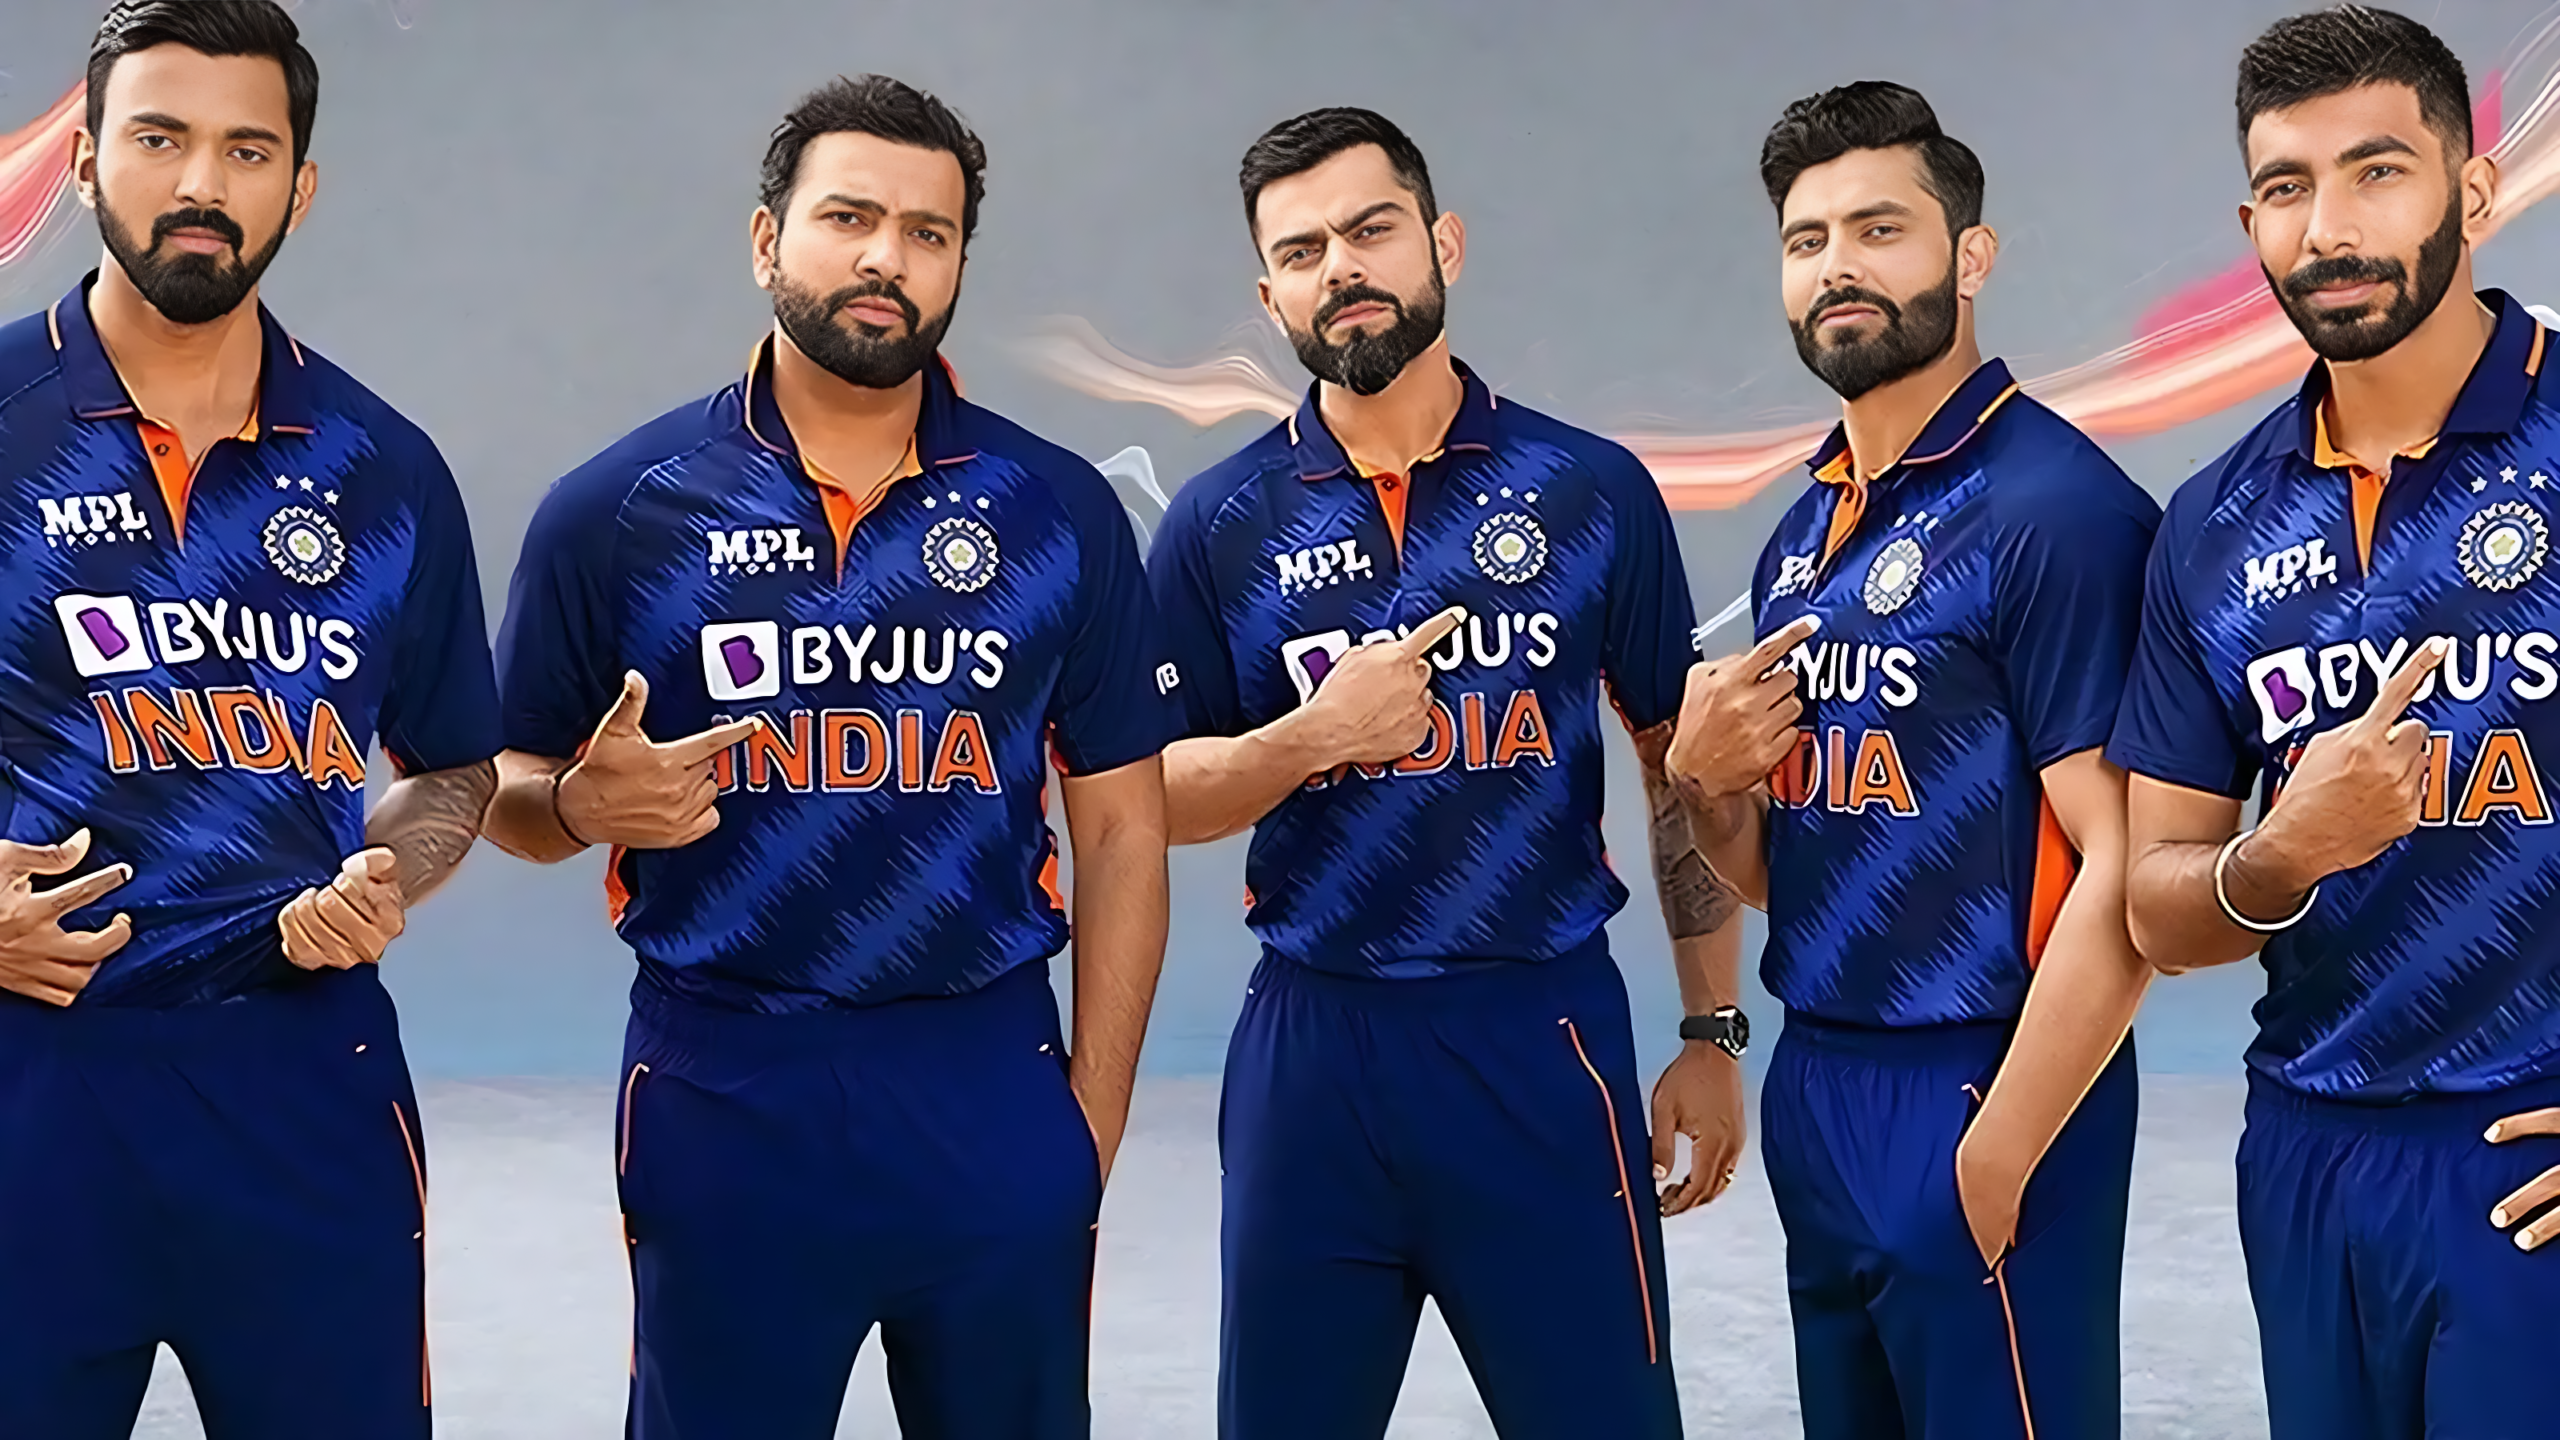 INDIA t20 series